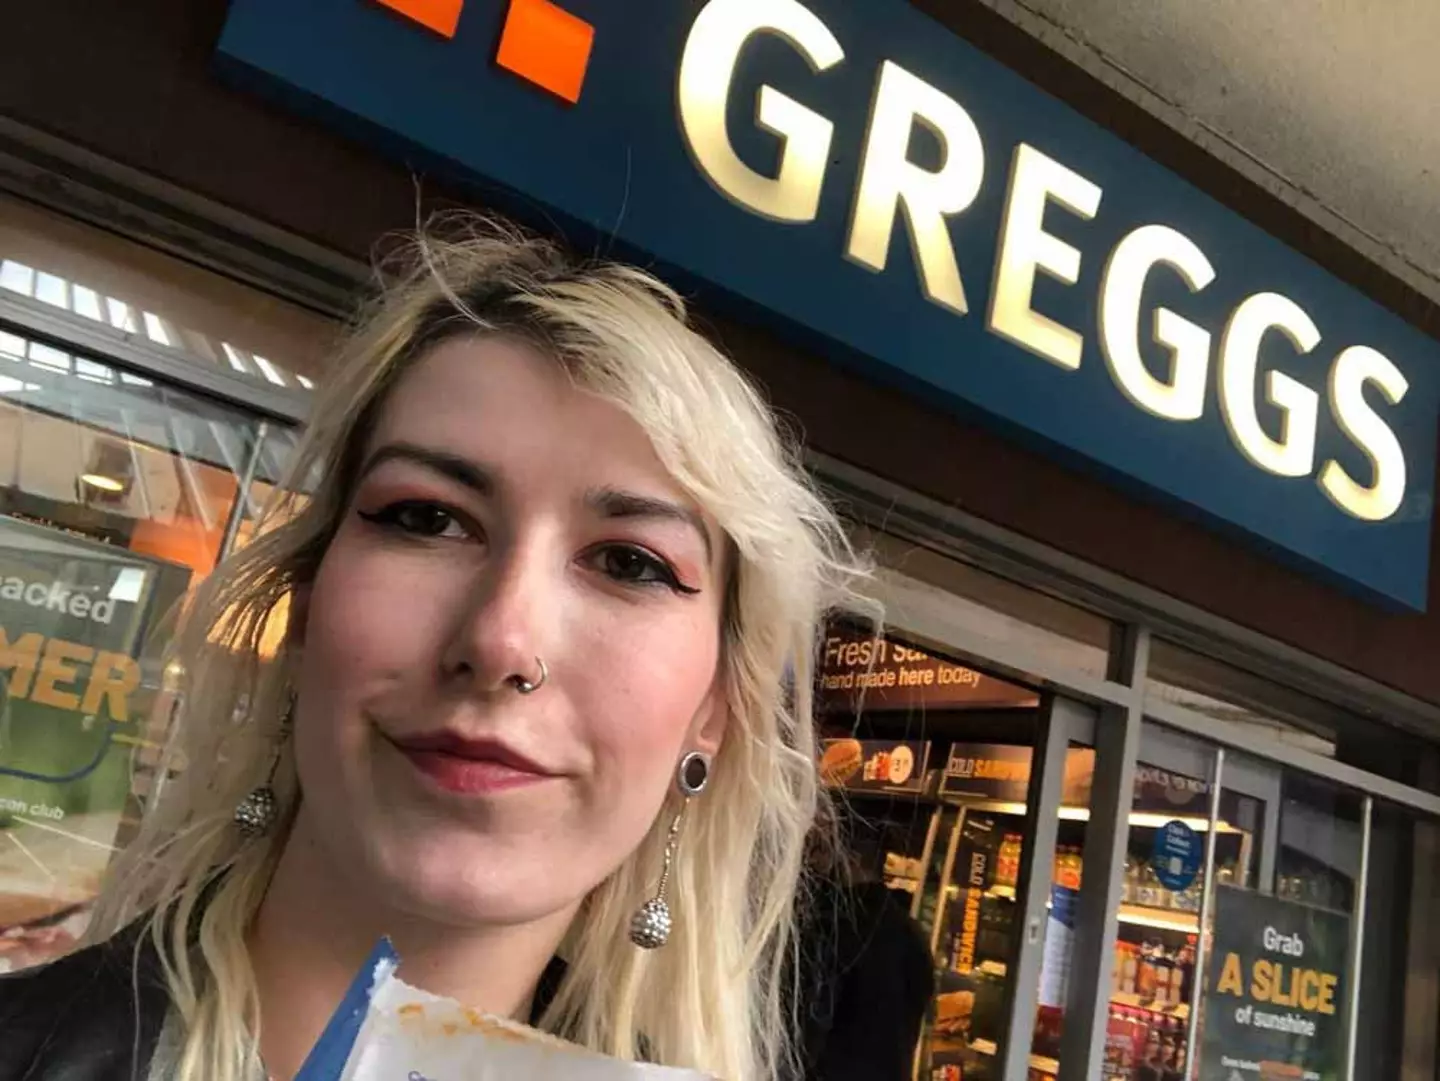 Megan eats Greggs for breakfast, lunch or dinner.